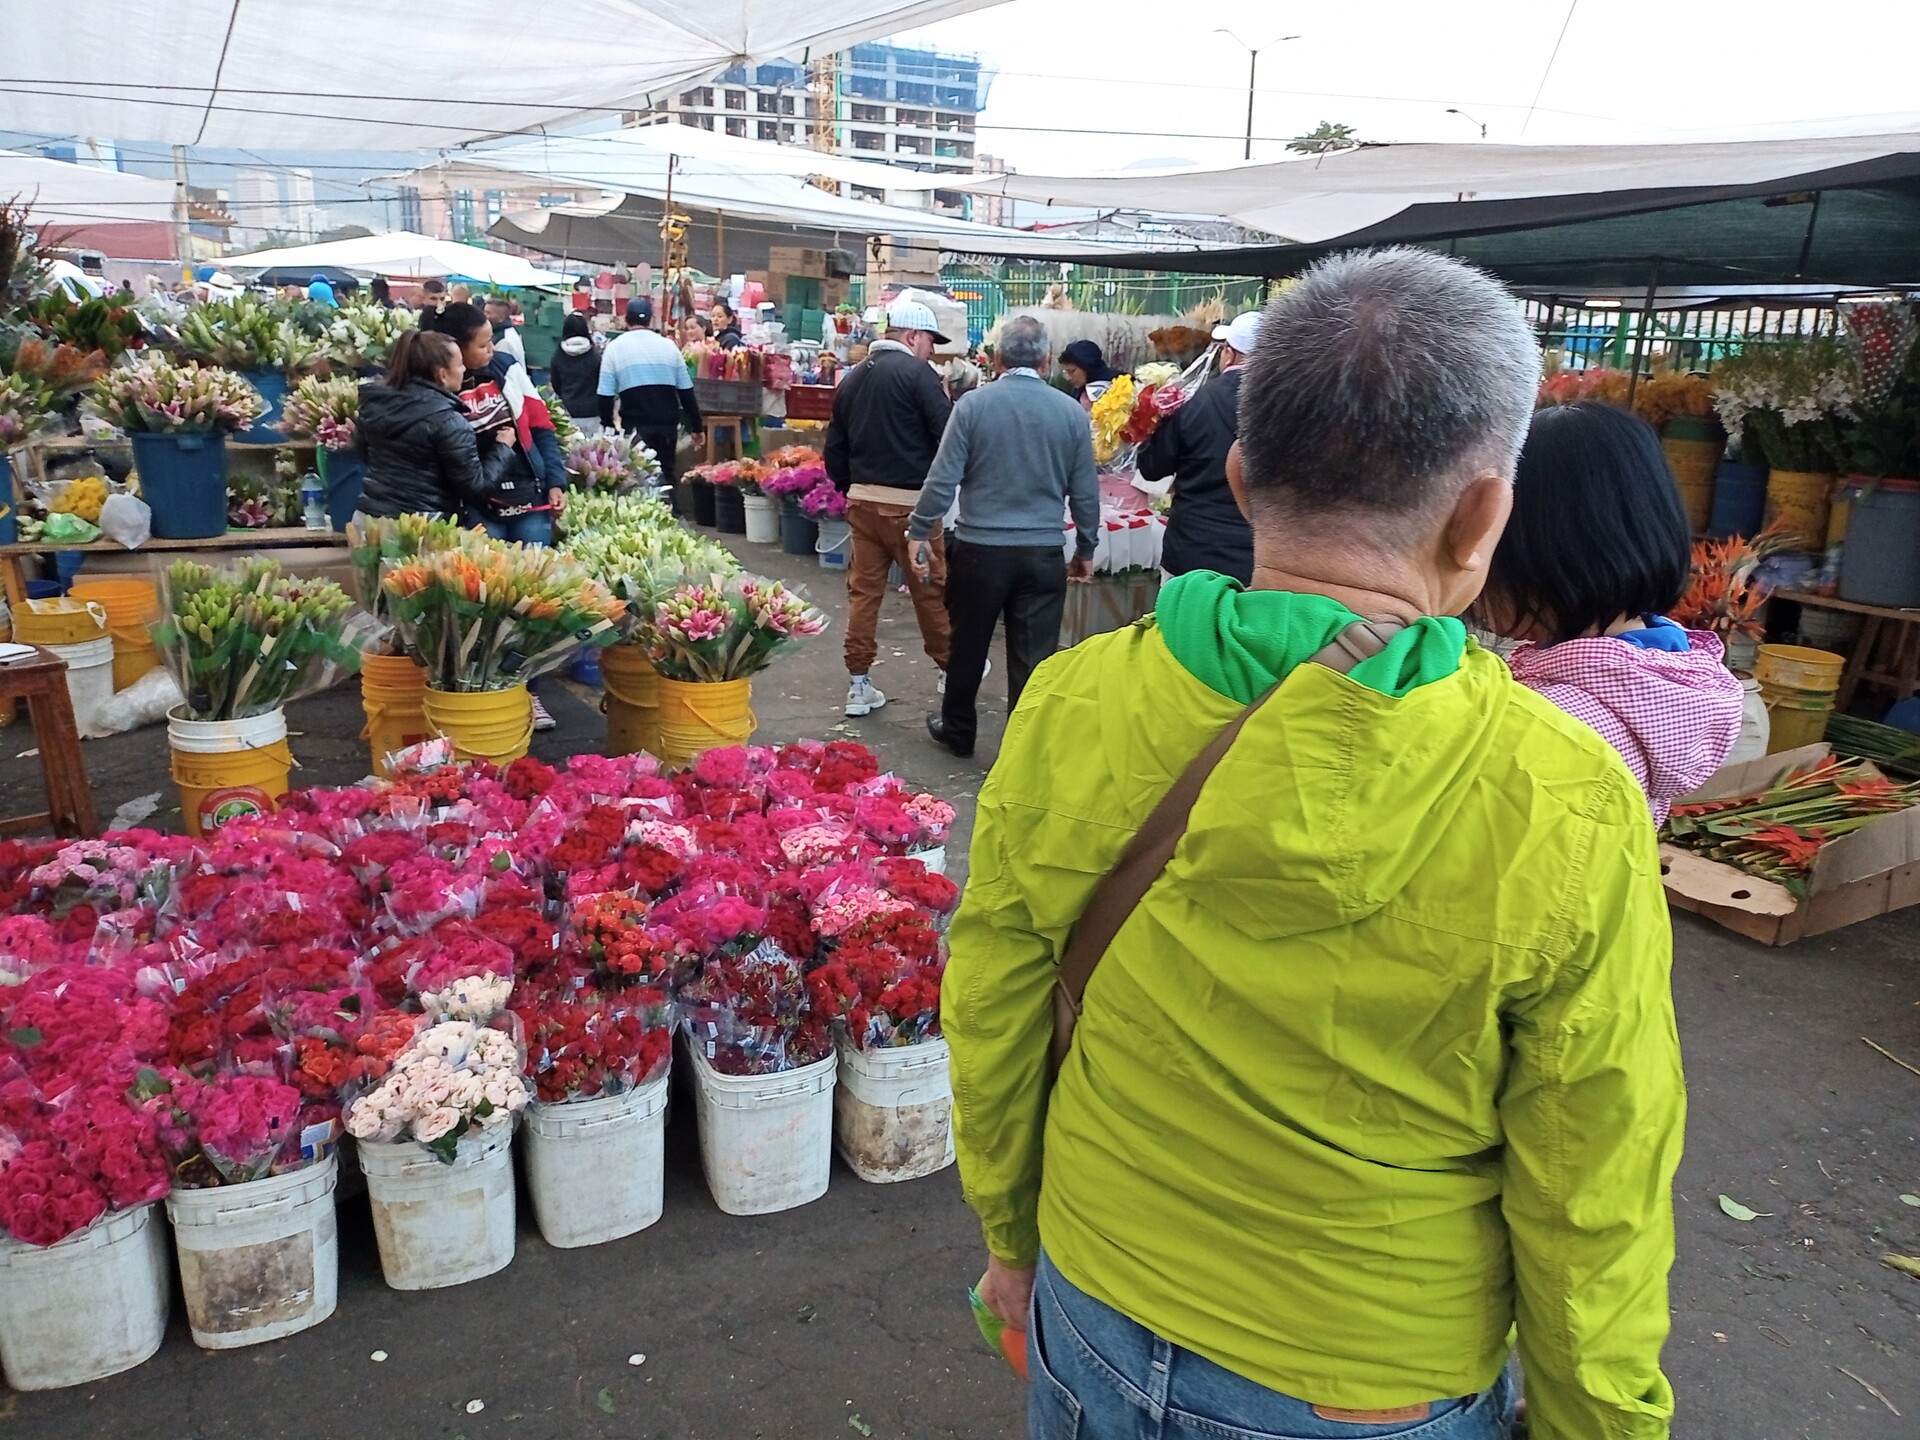 パロケマオ中央市場の青空フラワーマーケット | ボゴタ在住KENYさんのおすすめ観光スポット